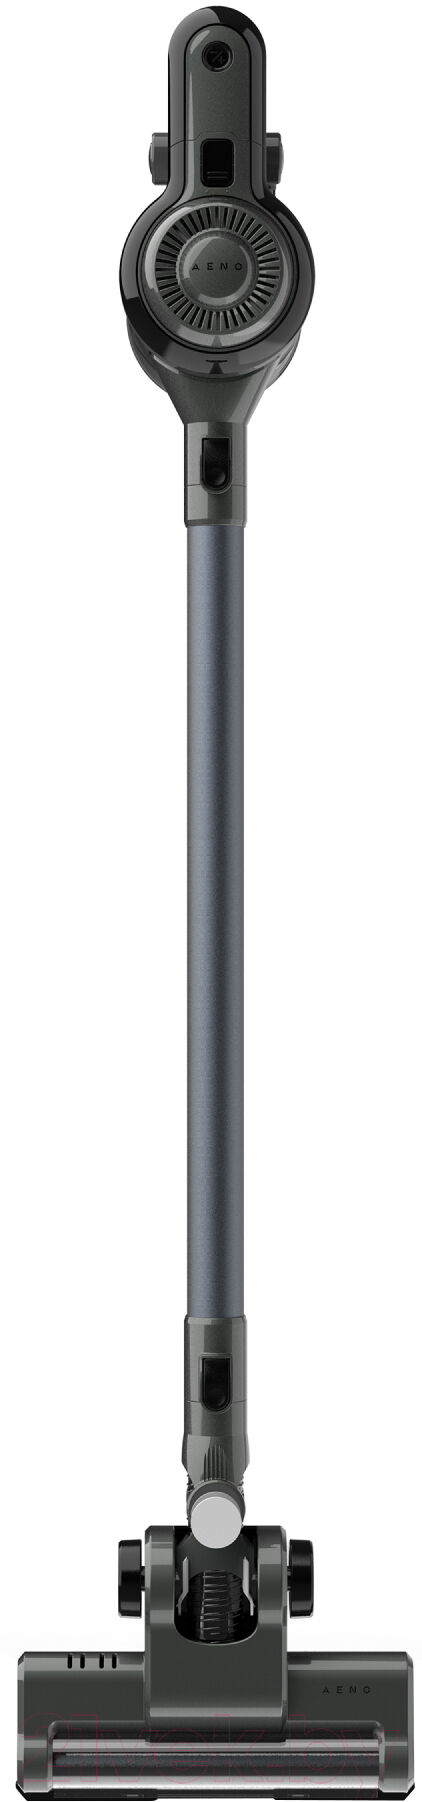 Вертикальный пылесос Aeno Cordless Vacuum Cleaner SC1 / ASC0001 1